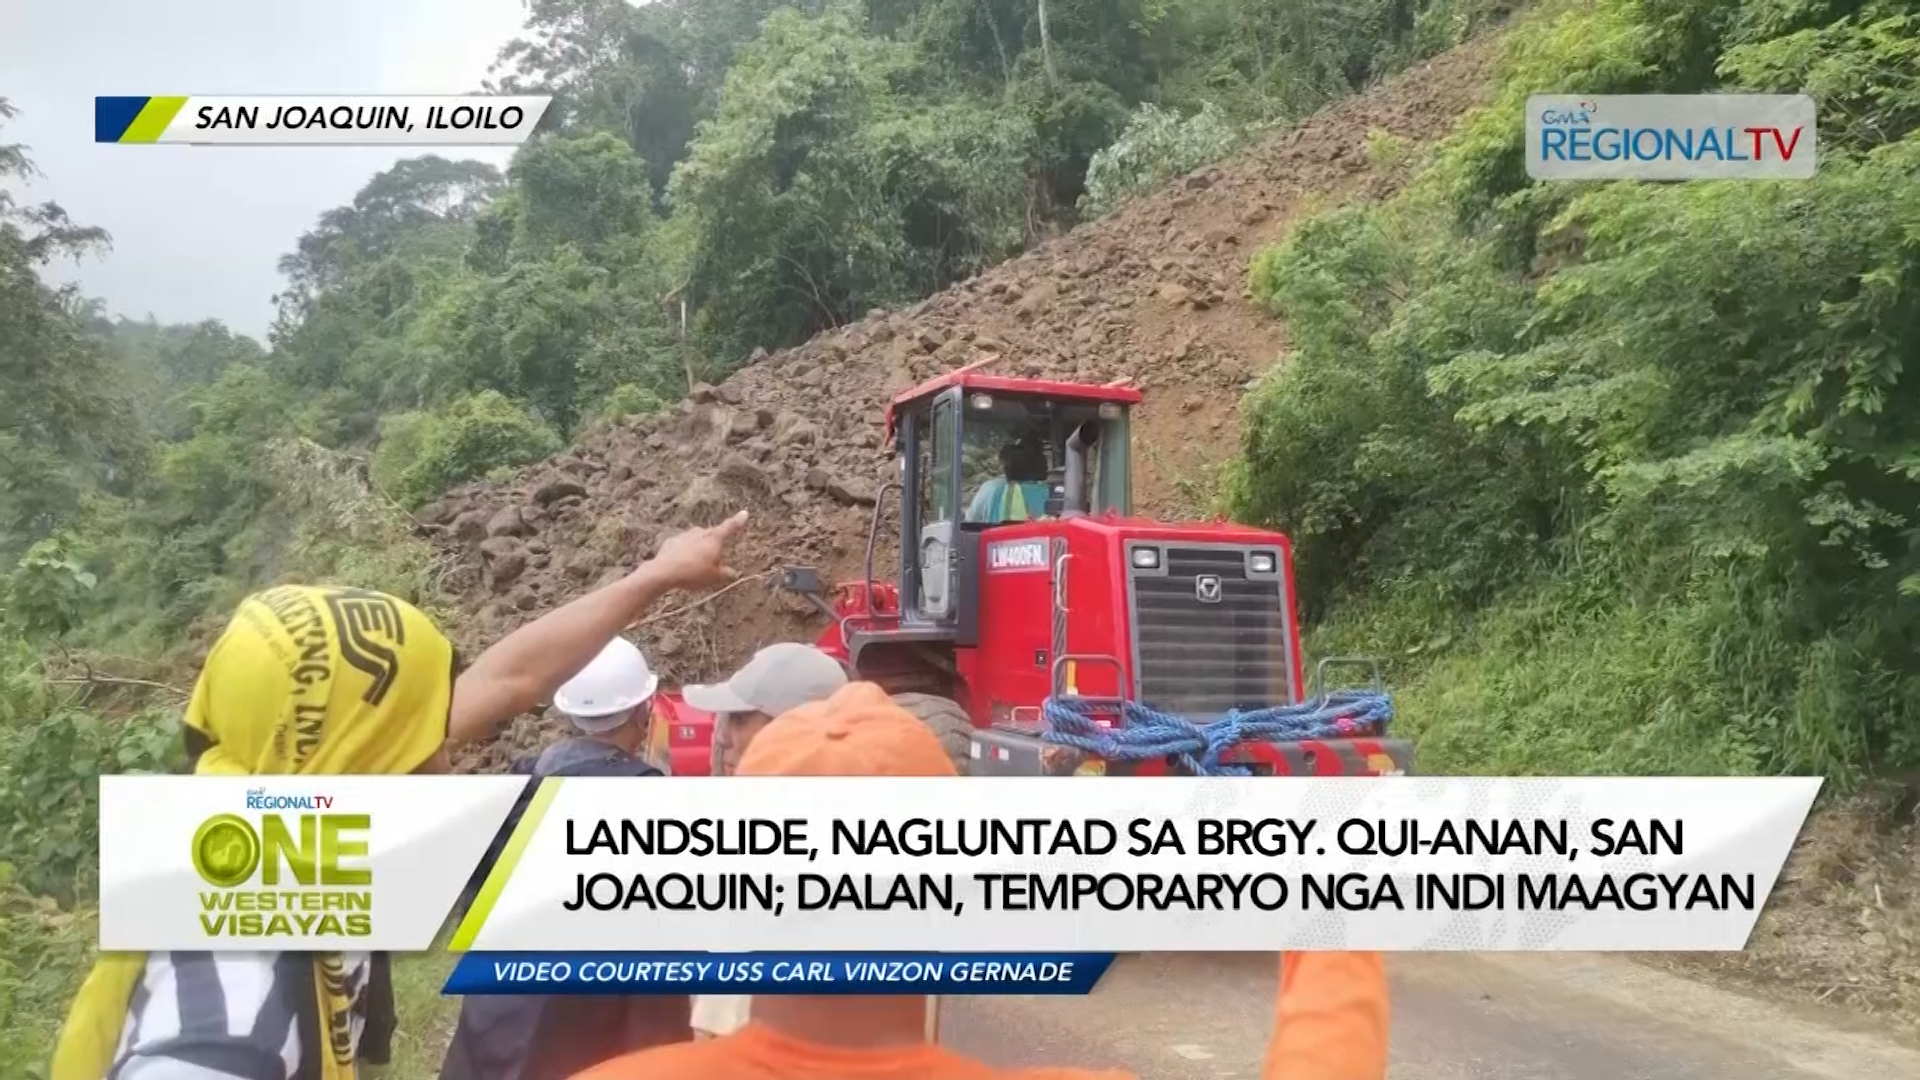 One Western Visayas Landslide Nagluntad Sa Brgy Qui Anan San